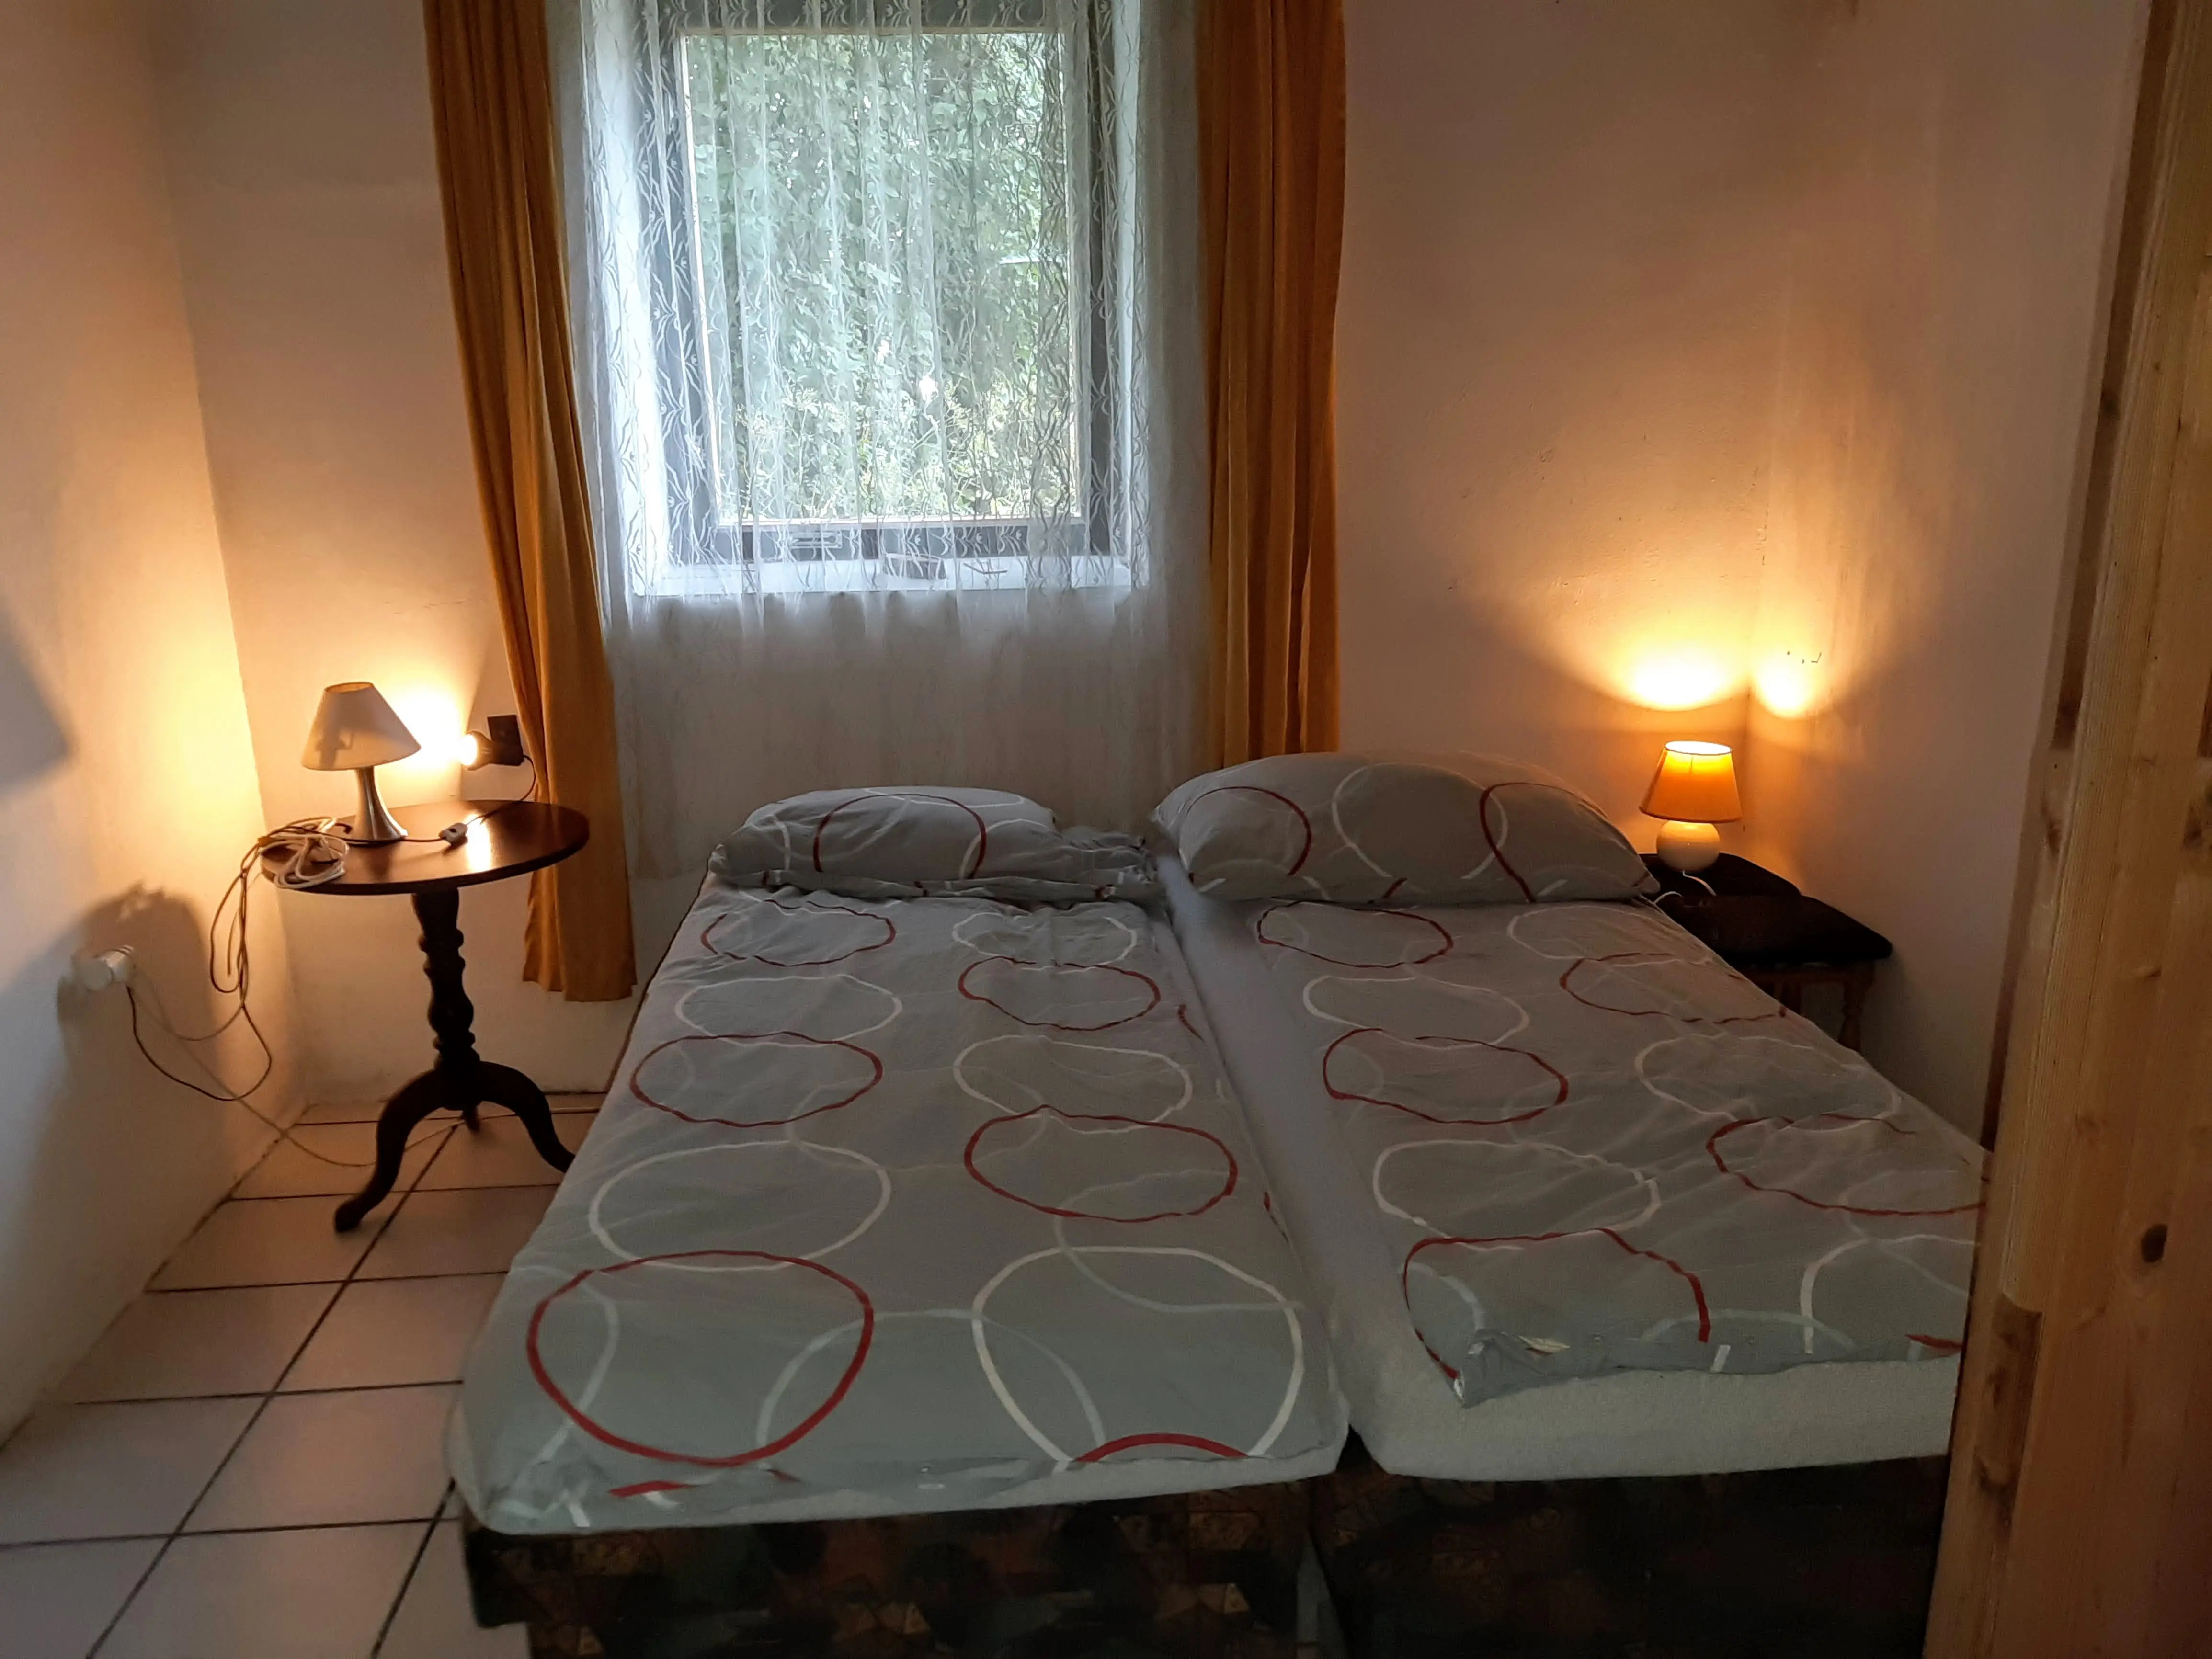 Grote slaapkamer in mooi te koop staand pand, regio Trutnov.